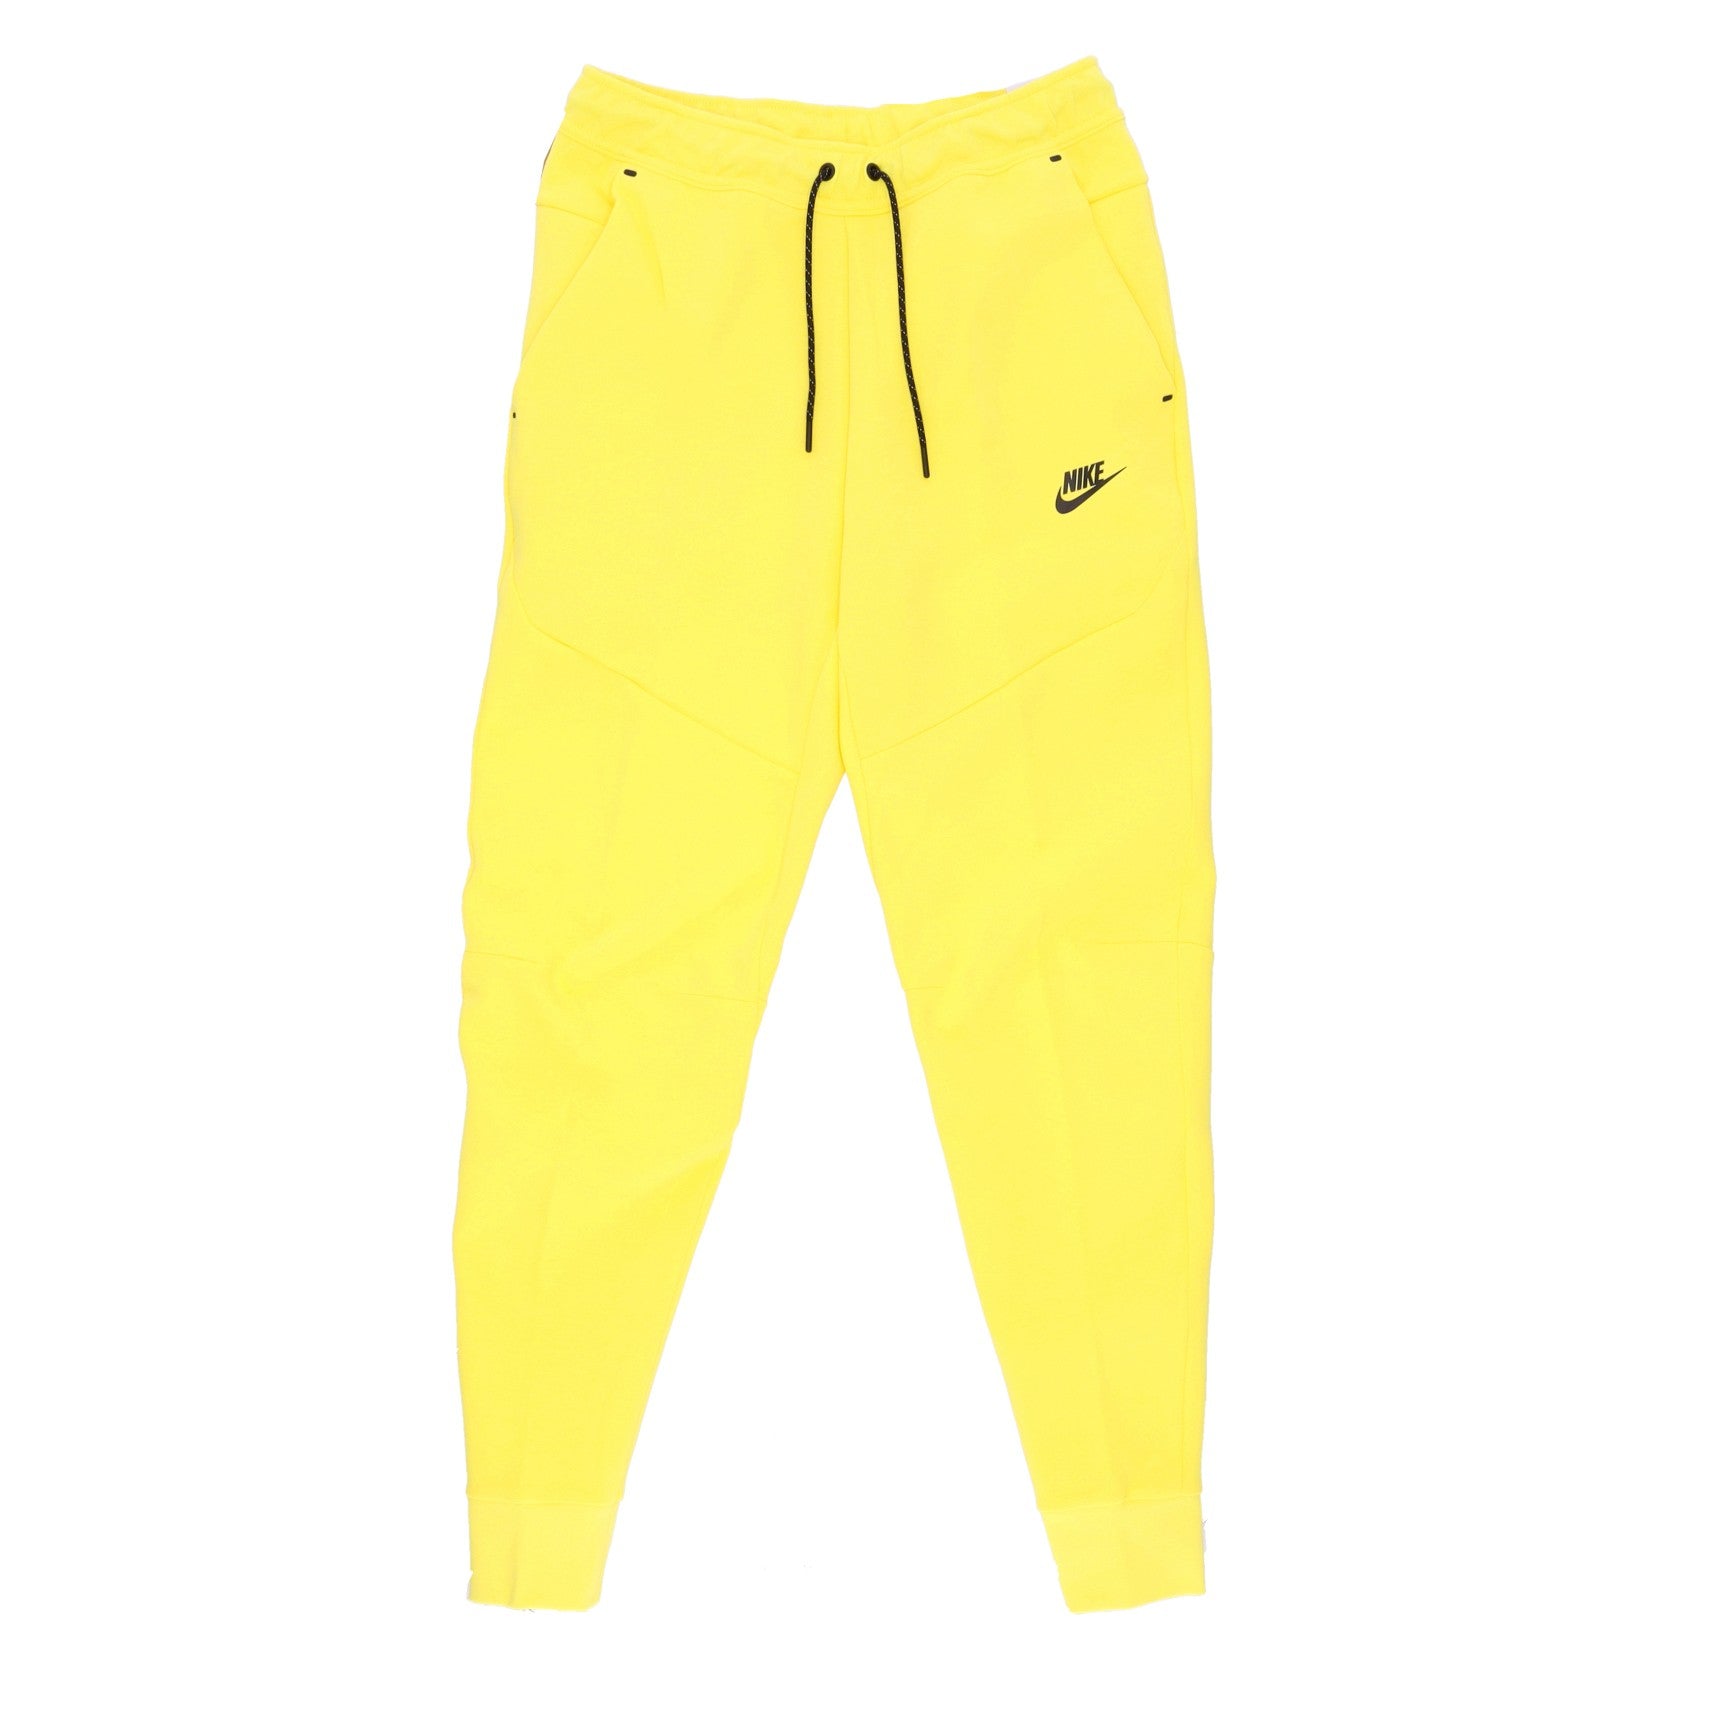 Pantalone Tuta Leggero Uomo Sportswear Tech Fleece Pant Yellow Strike/black